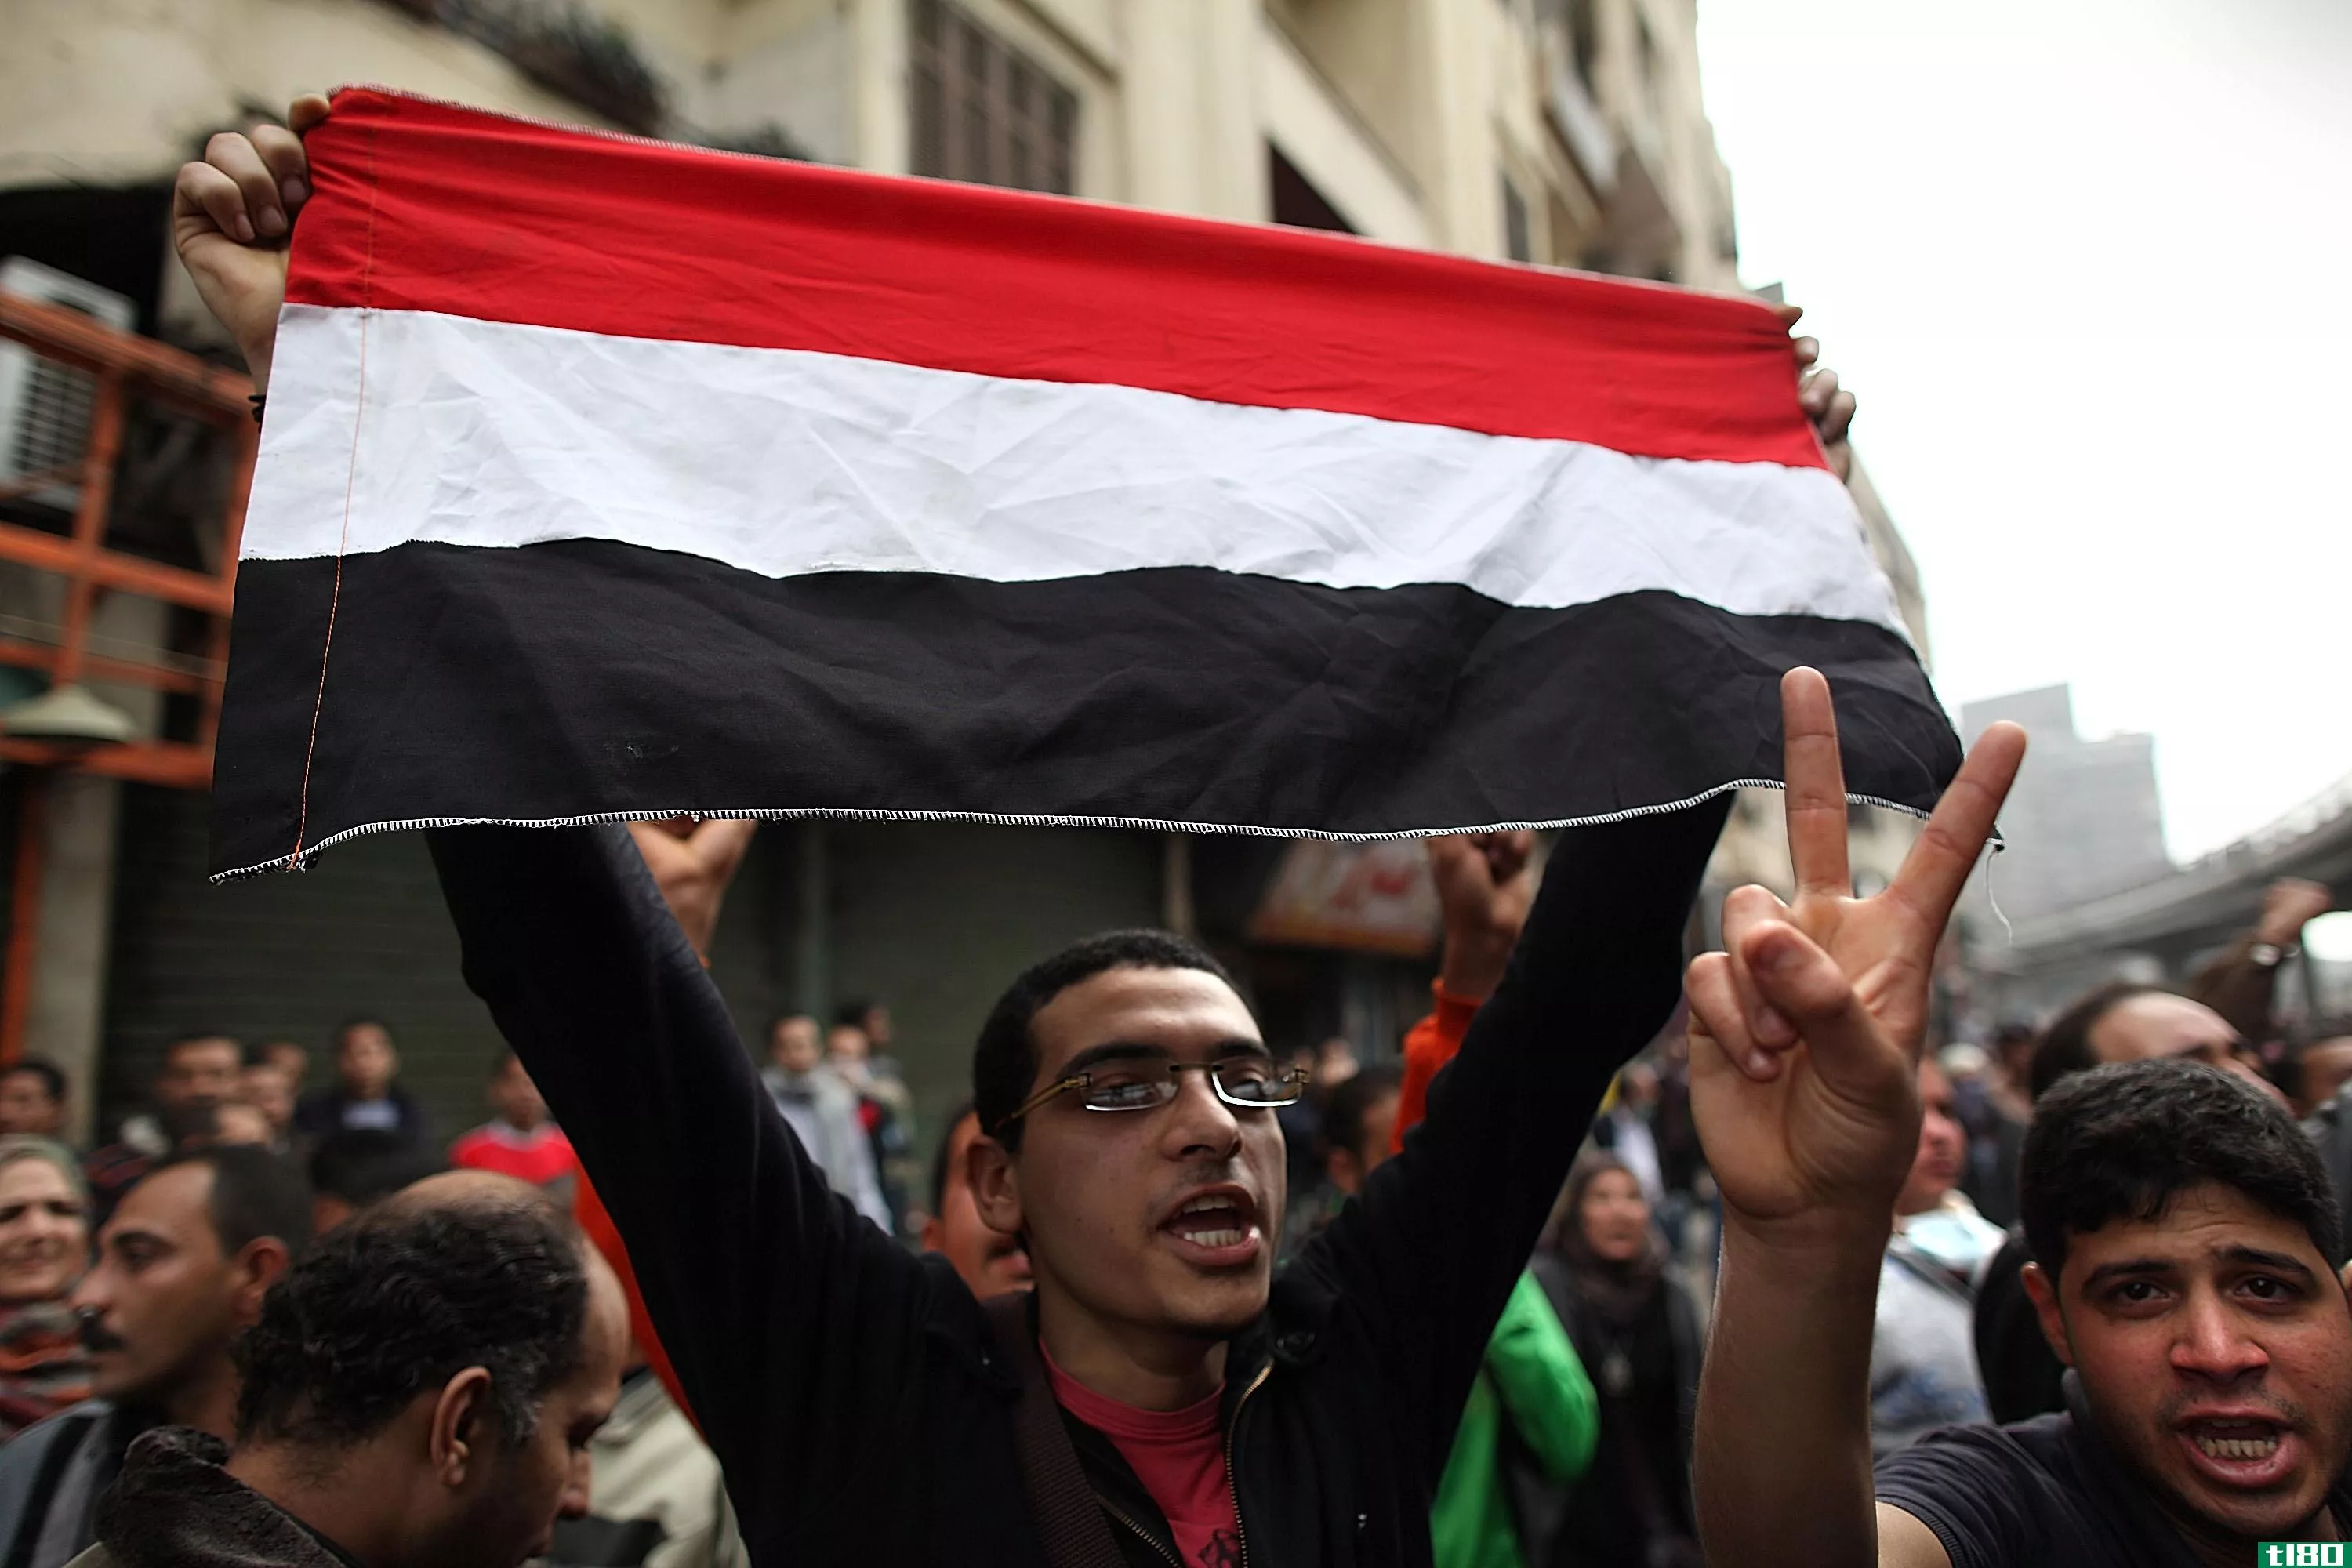 埃及以组织抗议的罪名逮捕facebook用户